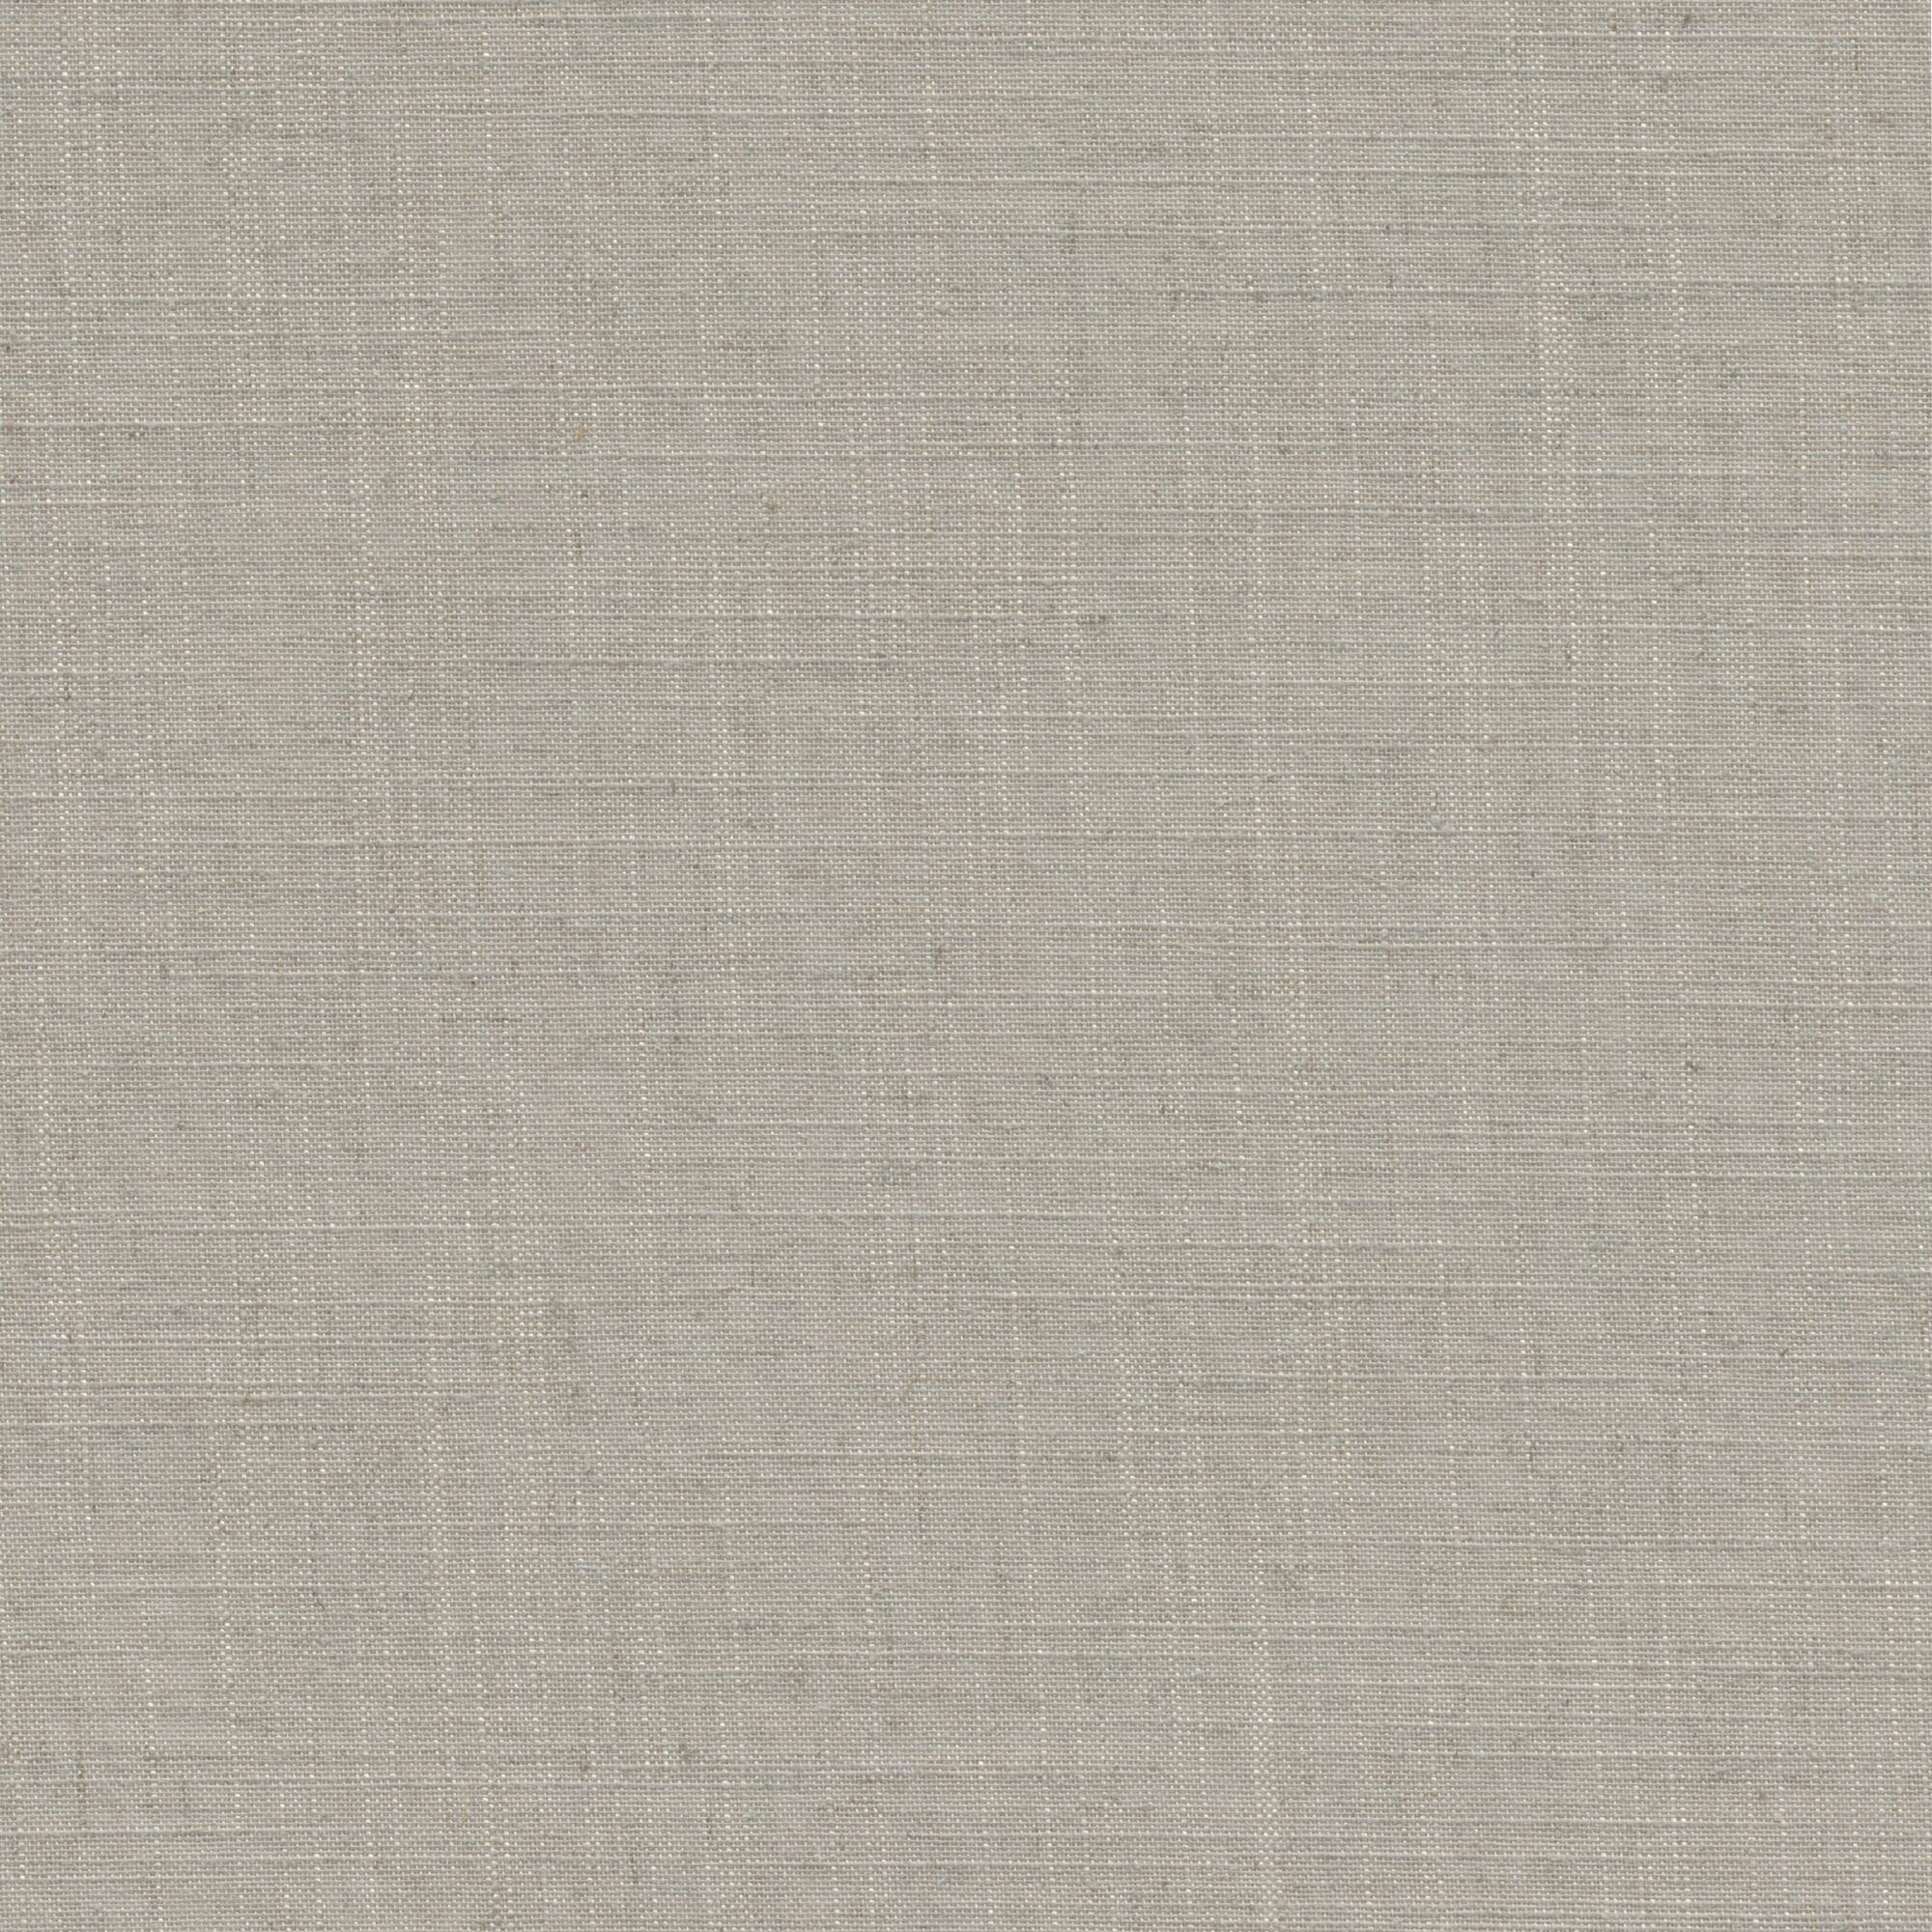 Tessuto per tende a rullo filtrante INSPIRE Brisbane beige 197 x 250 cm - 4